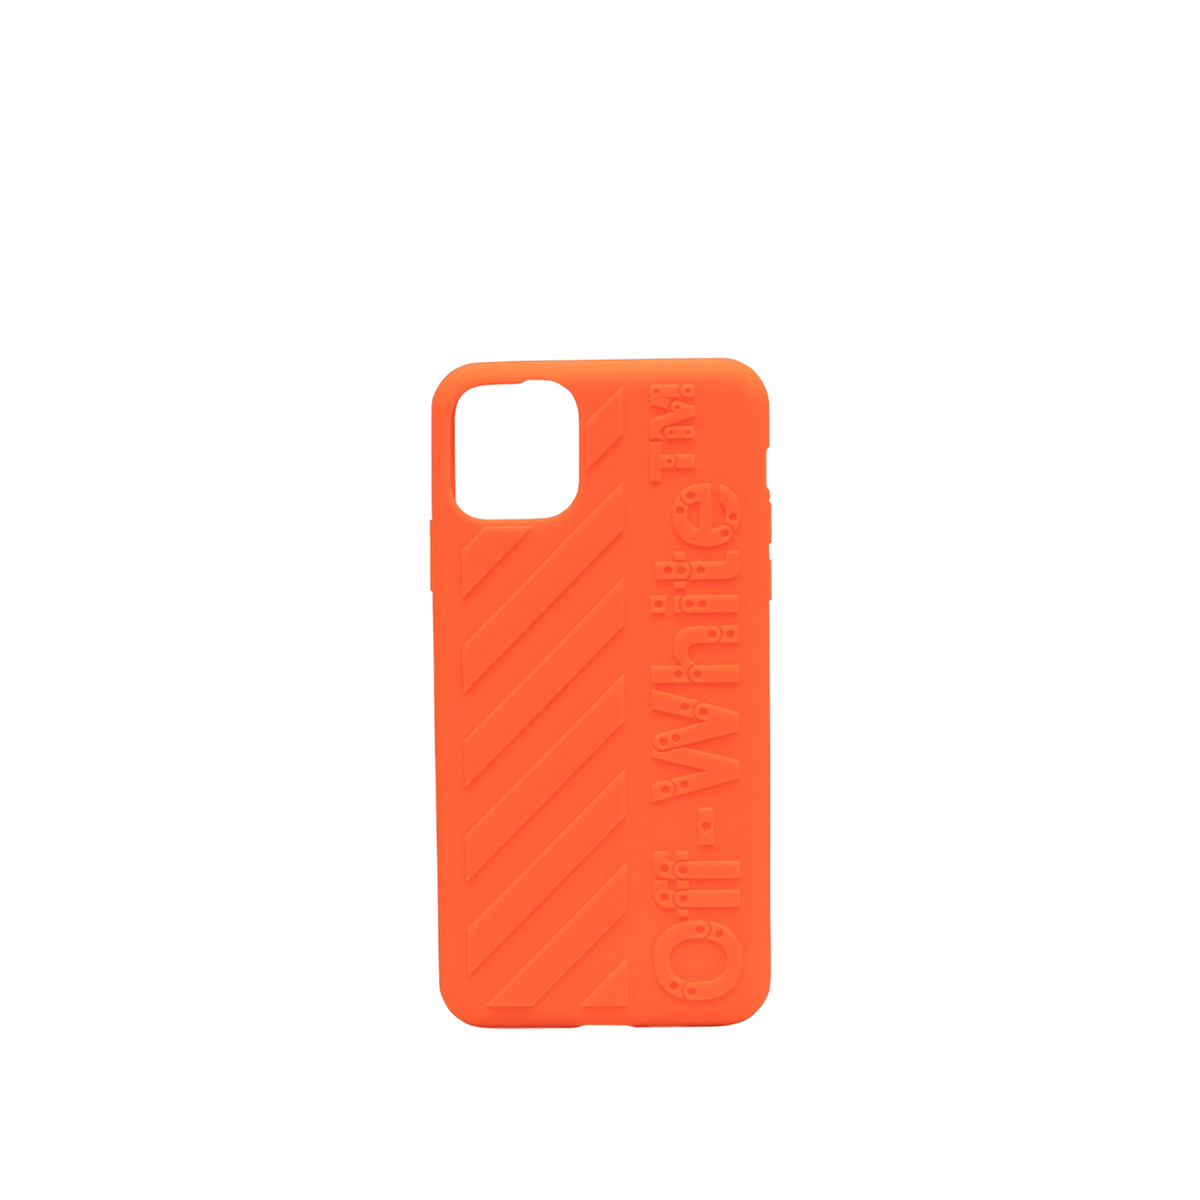 Diag iPhone 11 Pro Max Case - Orange